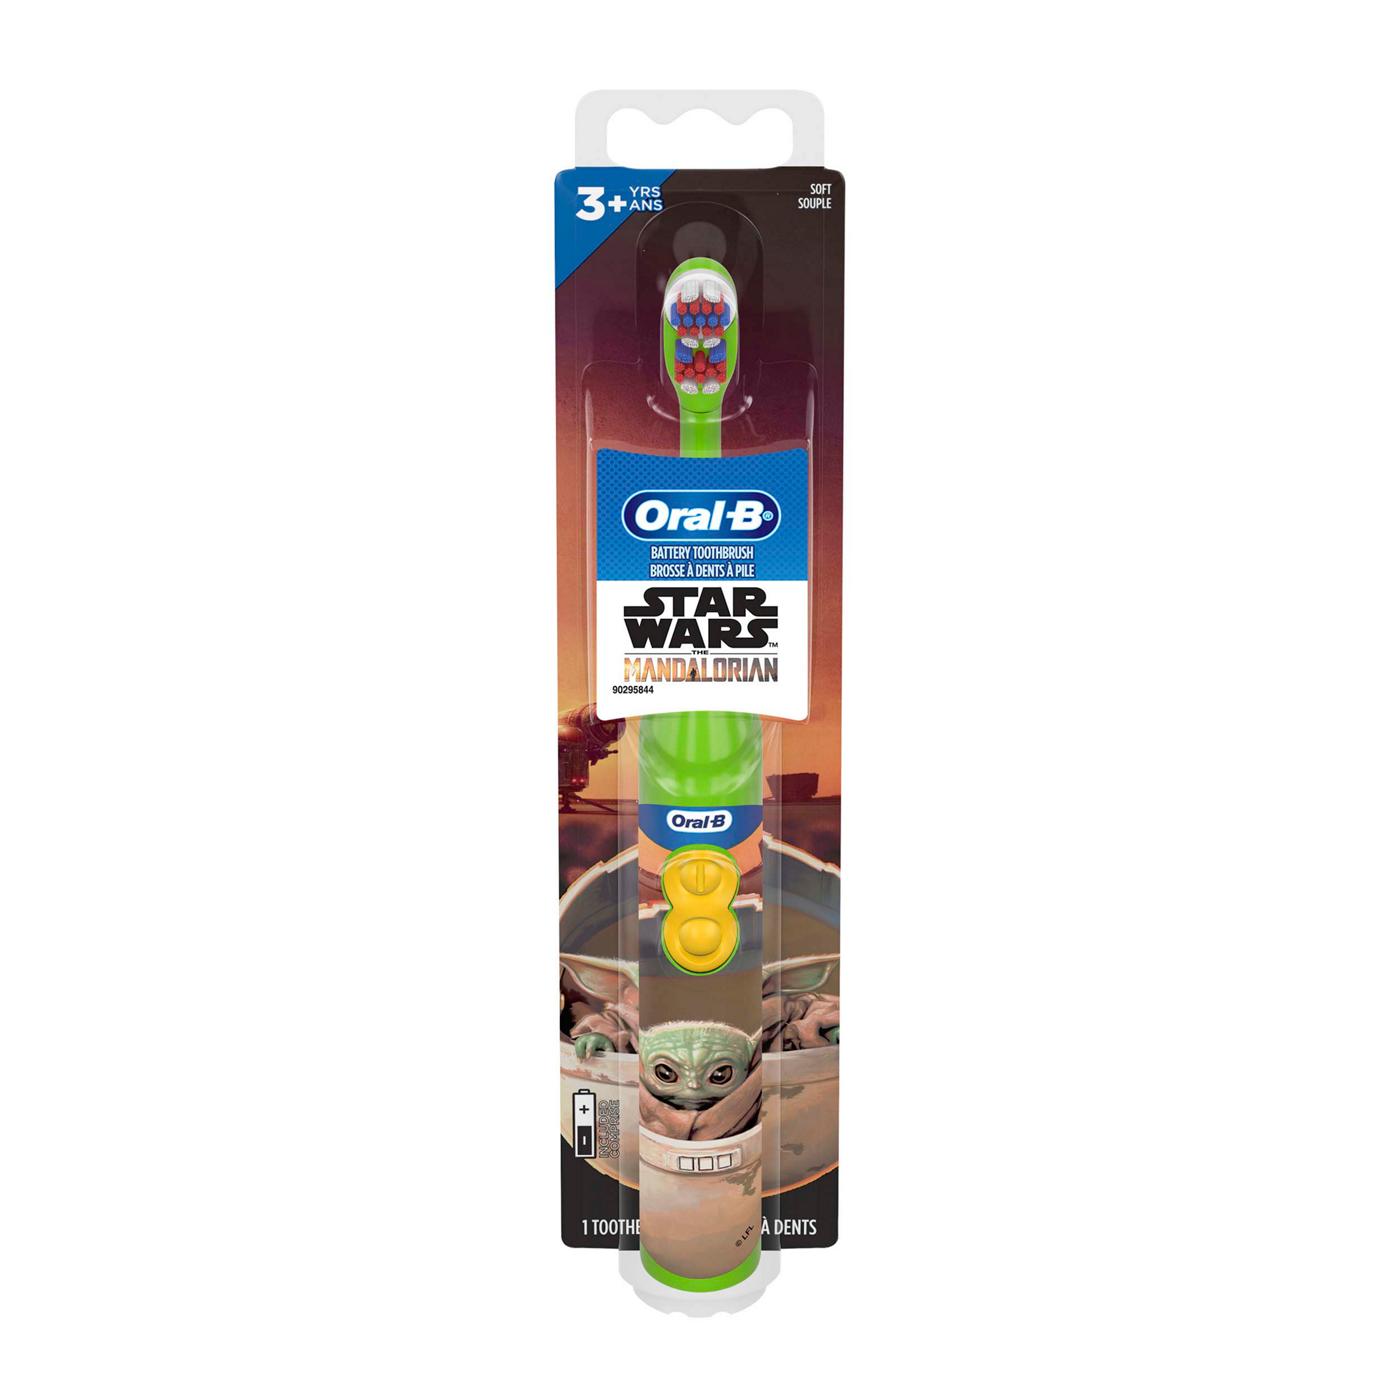 Oral-B Kids Star Wars Mandalorian Battery Power Toothbrush; image 1 of 6